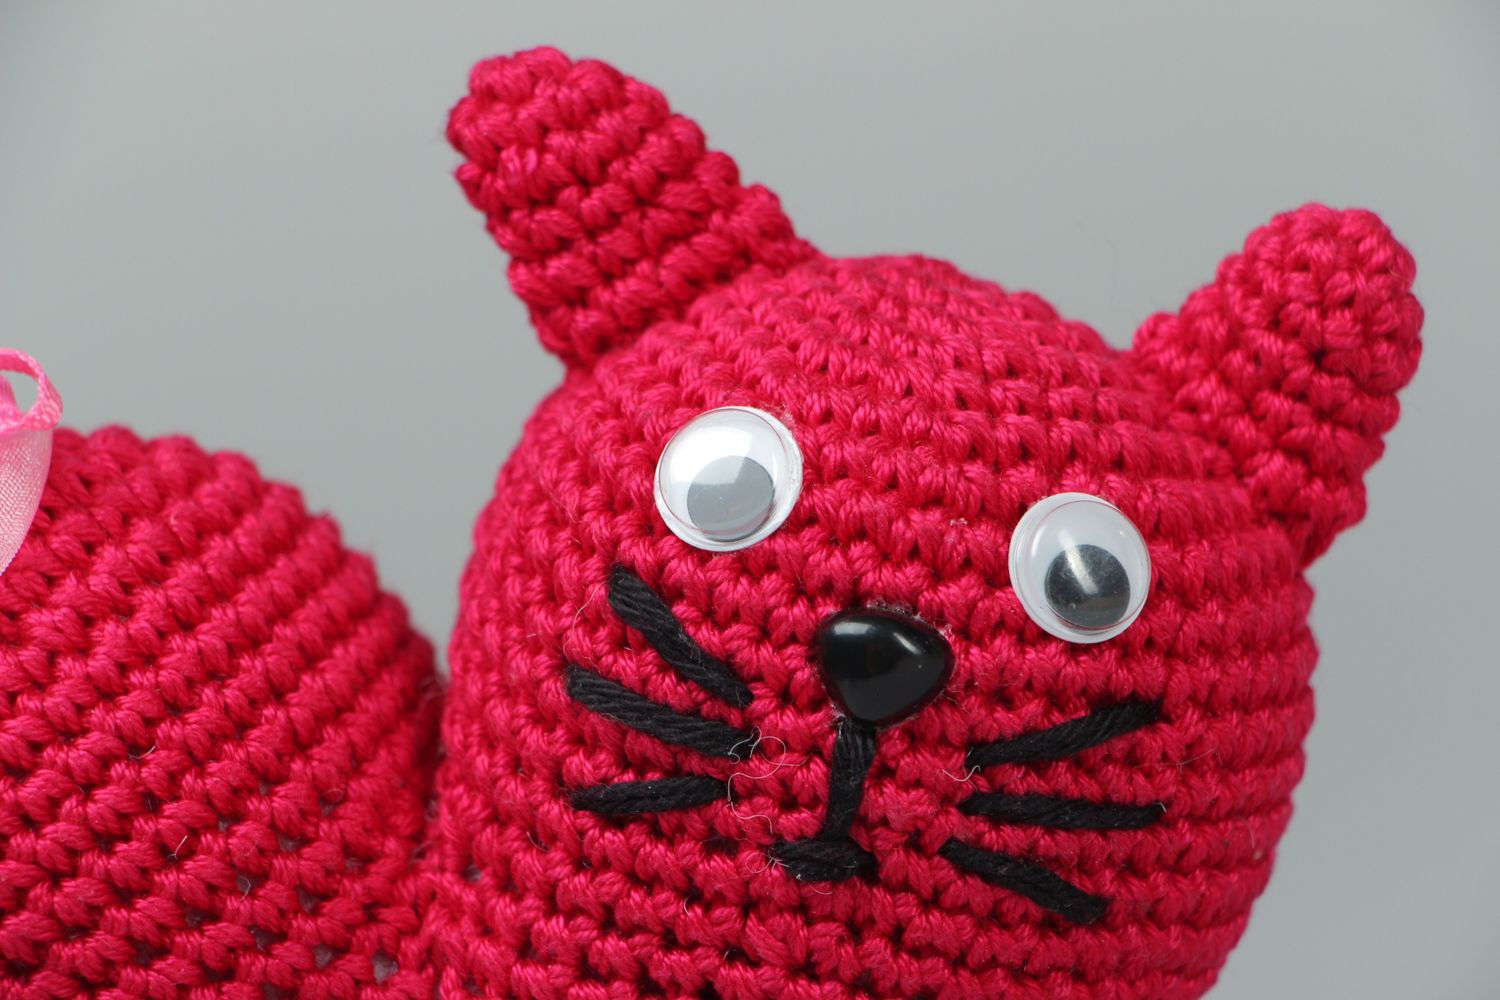 Crochet heart-shaped toy cat photo 2